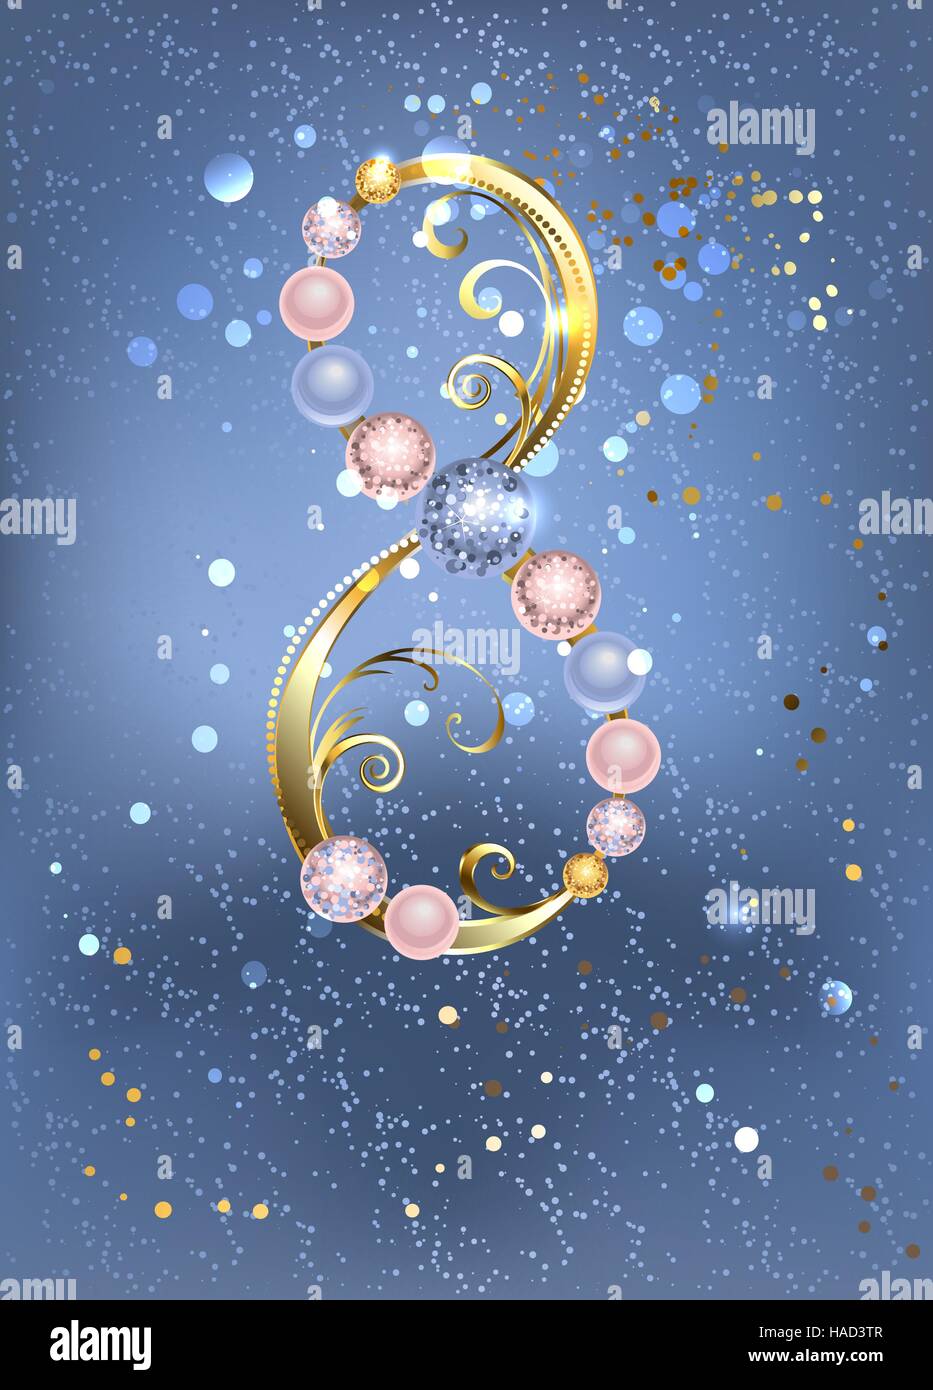 Acht Gold, verziert mit Rosenquarz Perlen von Farbe und Gelassenheit auf blauem Hintergrund Textur. 8. März - Frauentag Stock Vektor